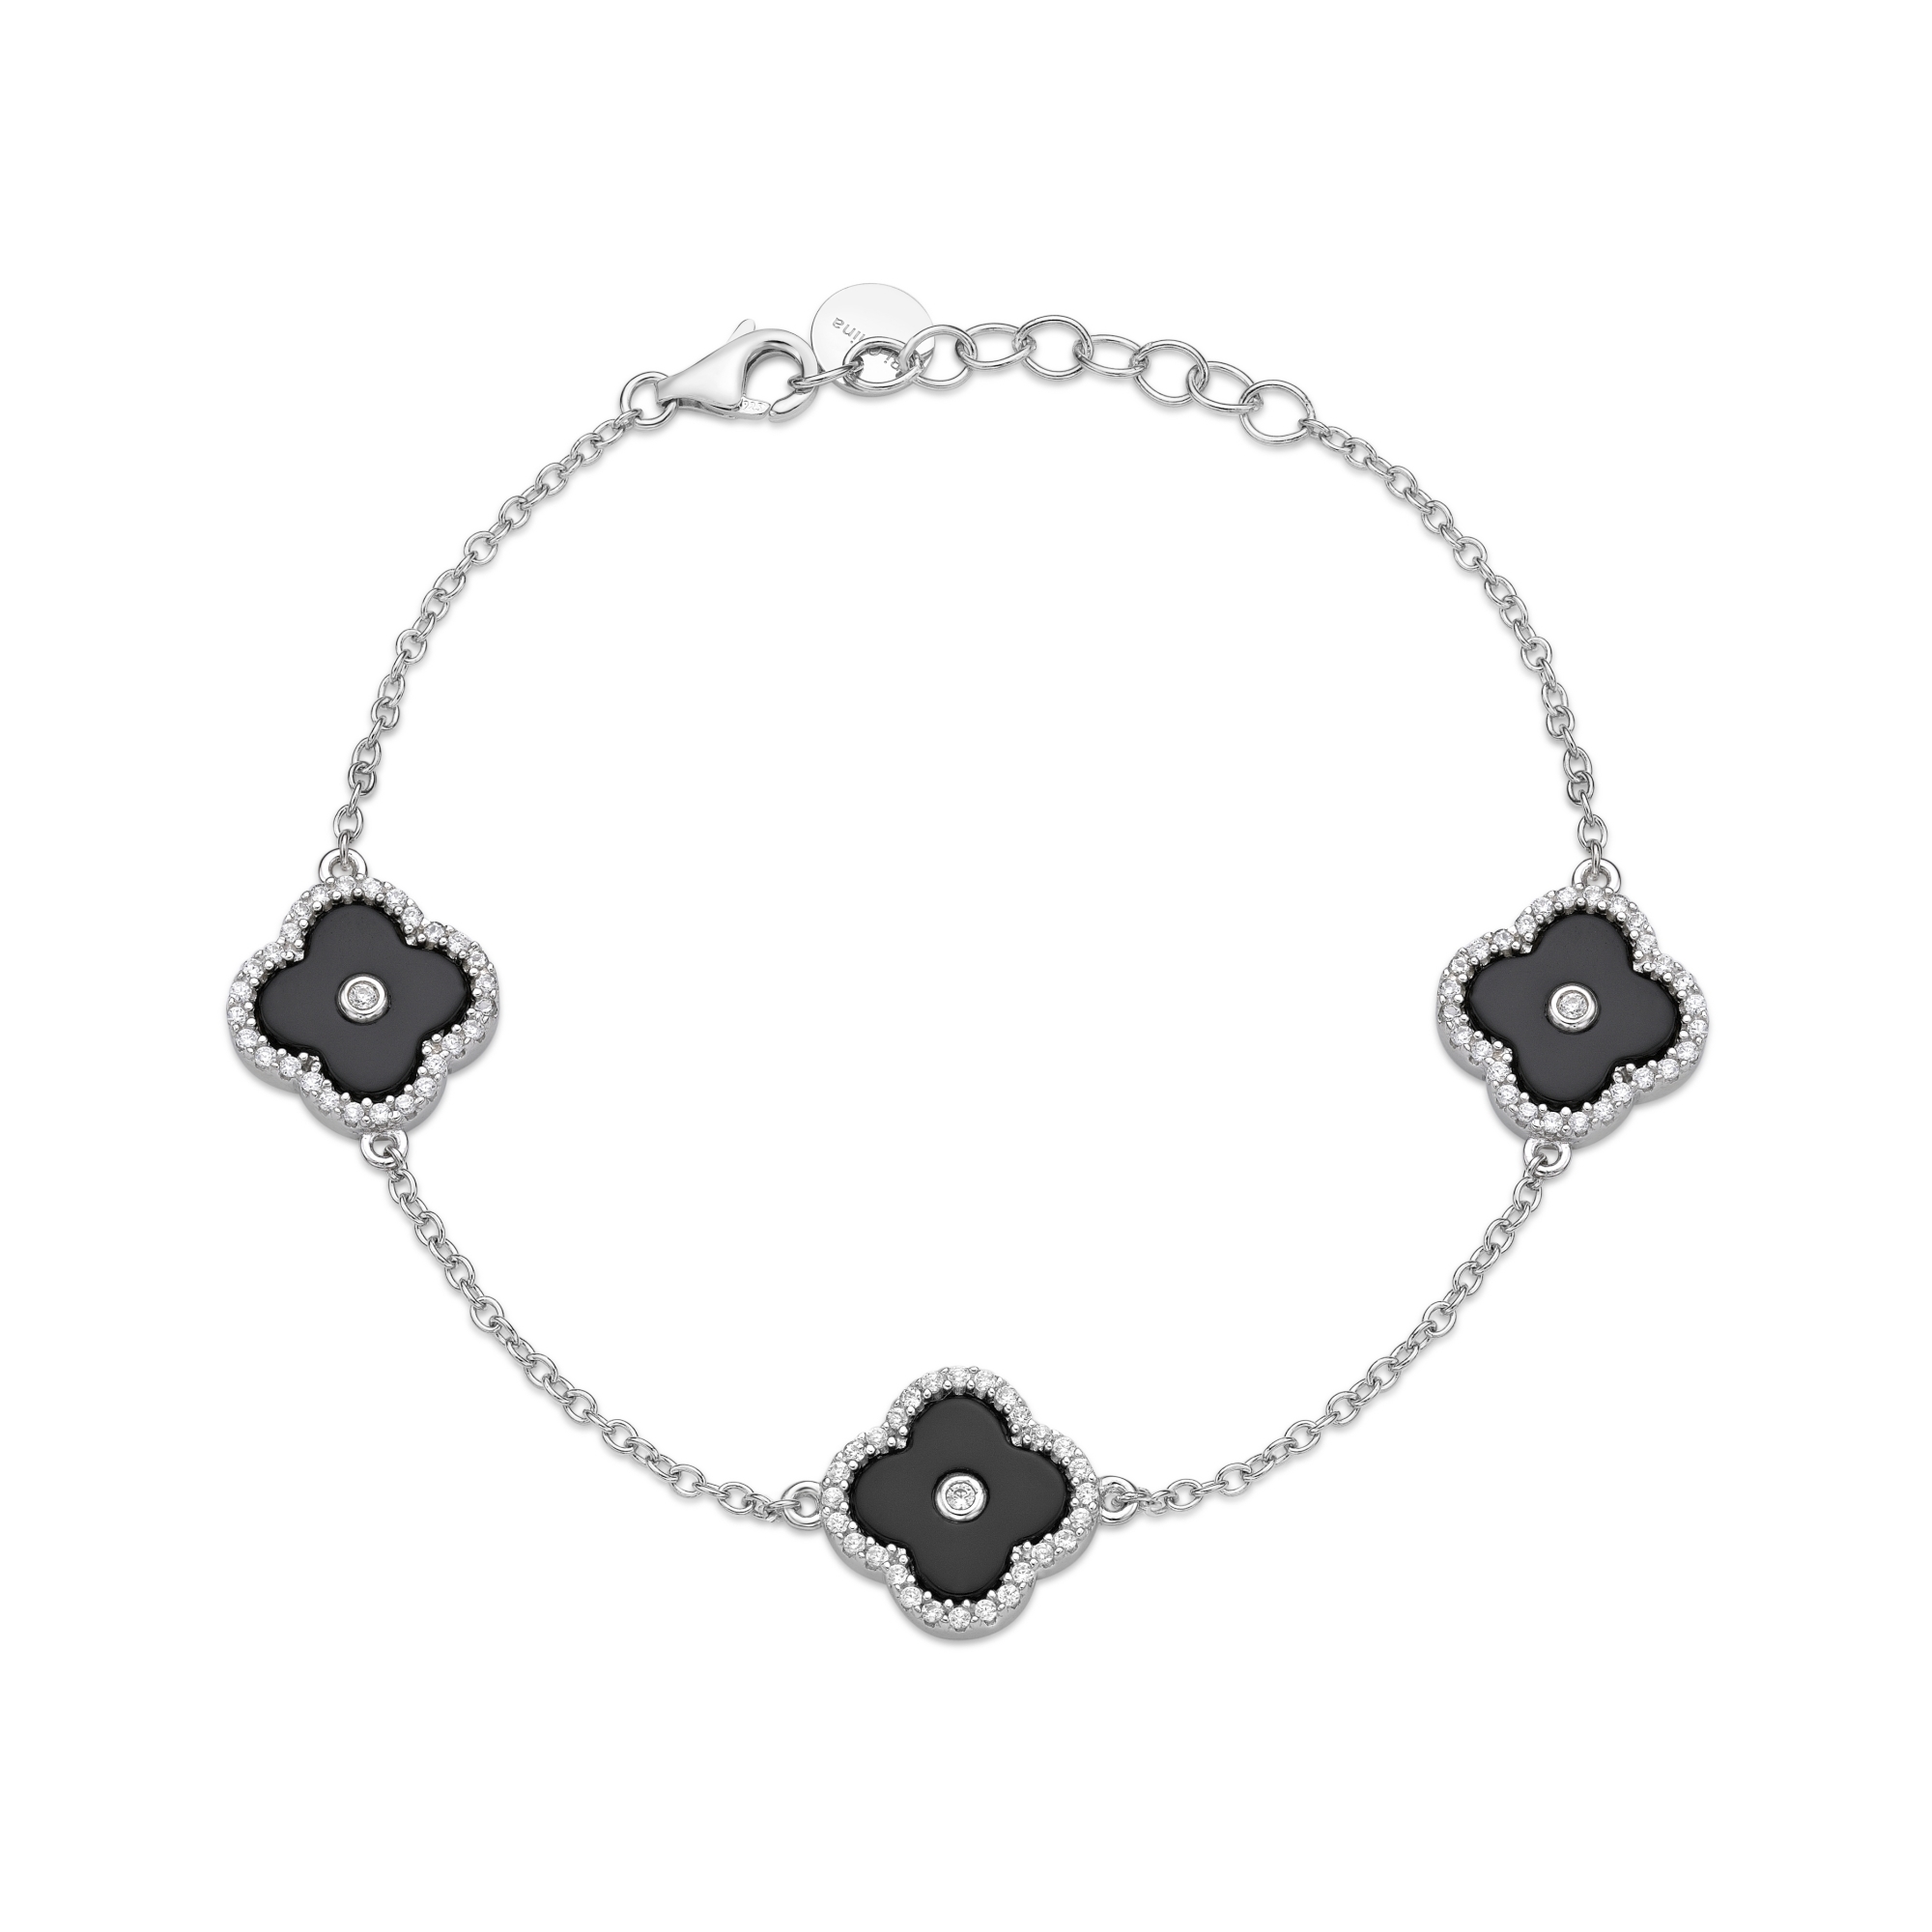 50972-bracelet-fashion-jewelry-sterling-silver-50972-3.jpg